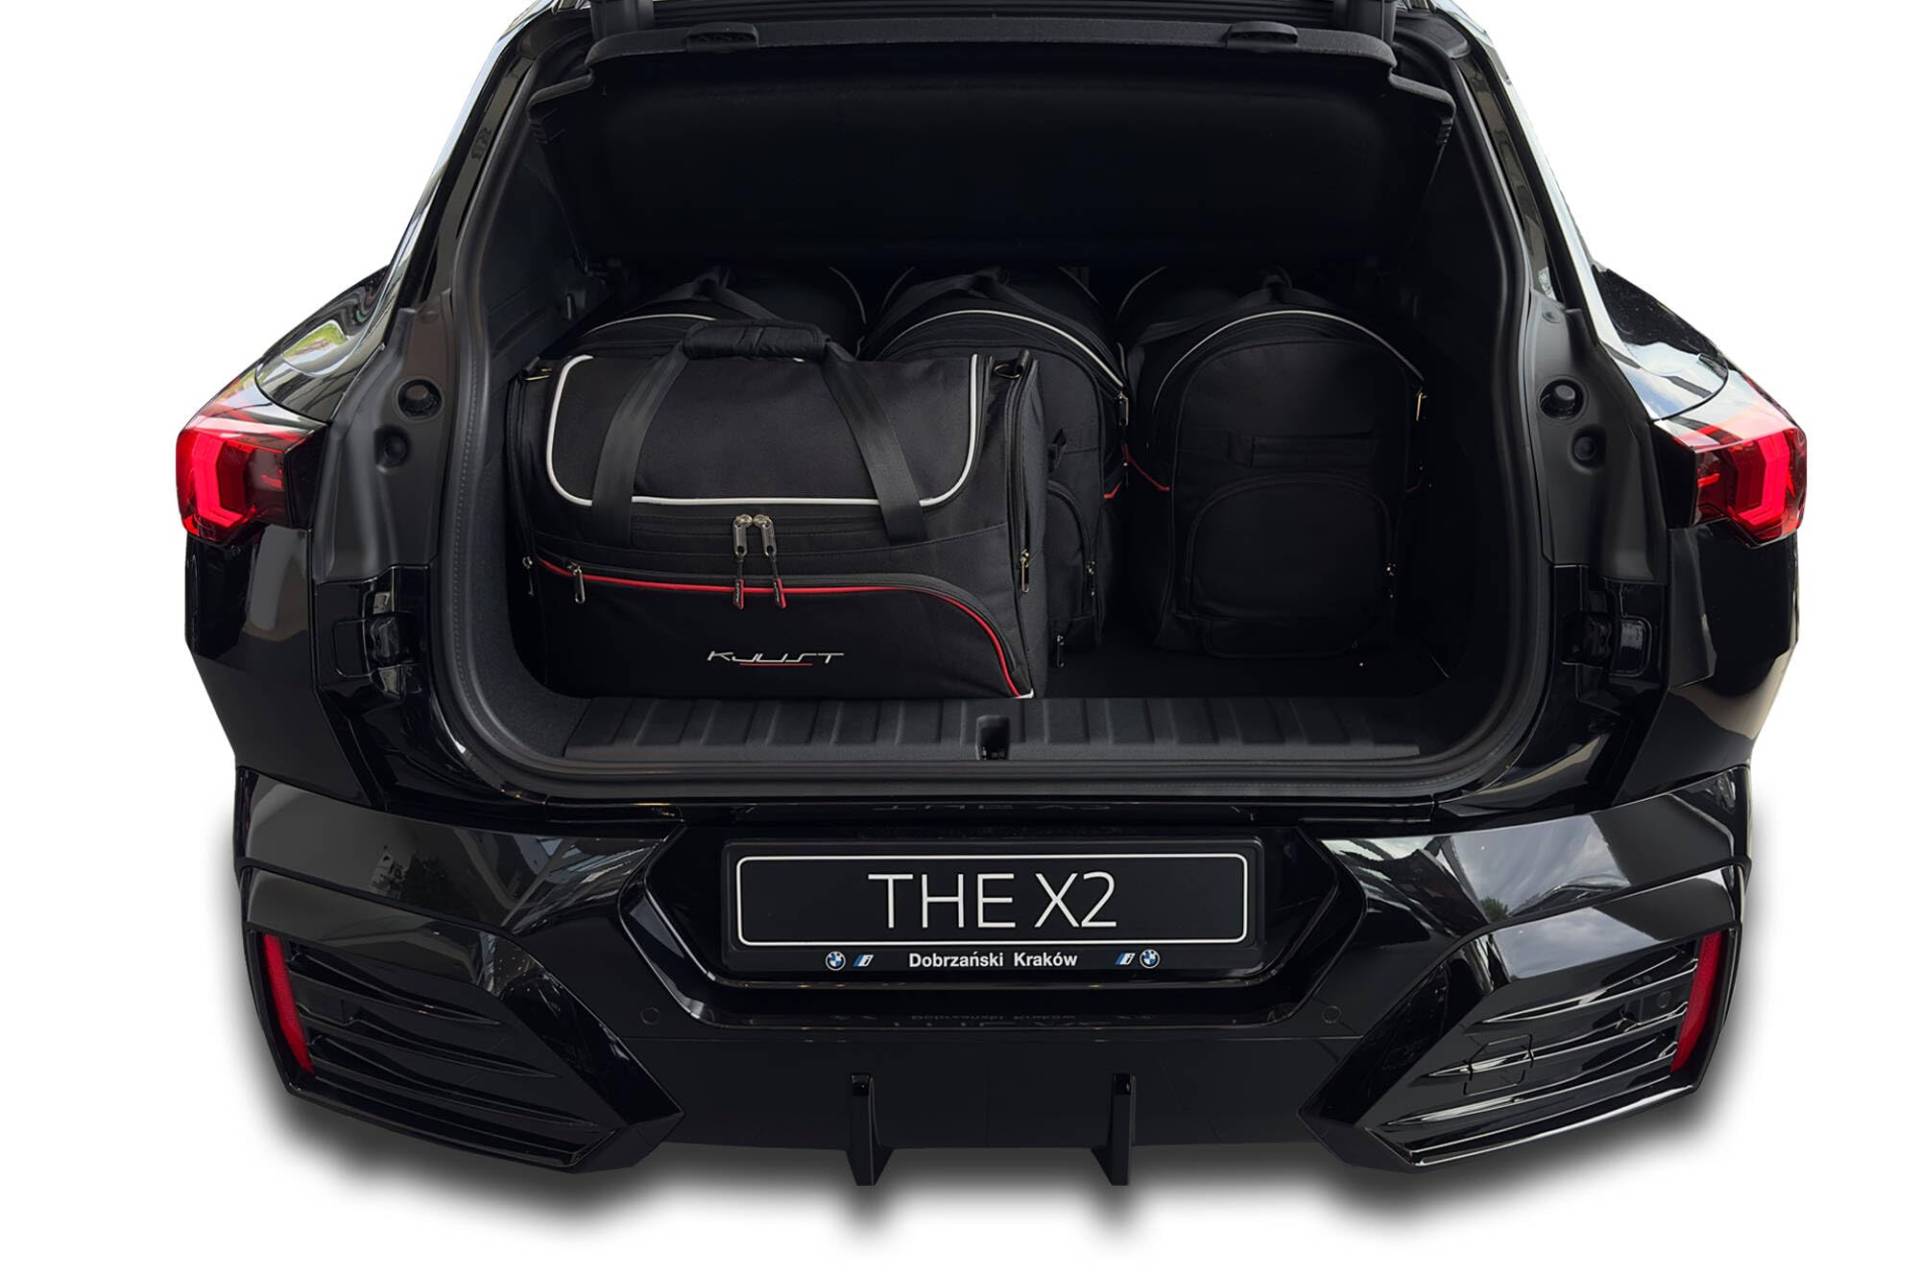 KJUST Dedizierte Kofferraumtaschen 4 STK kompatibel mit BMW X1 E84 2009-2015 von KJUST